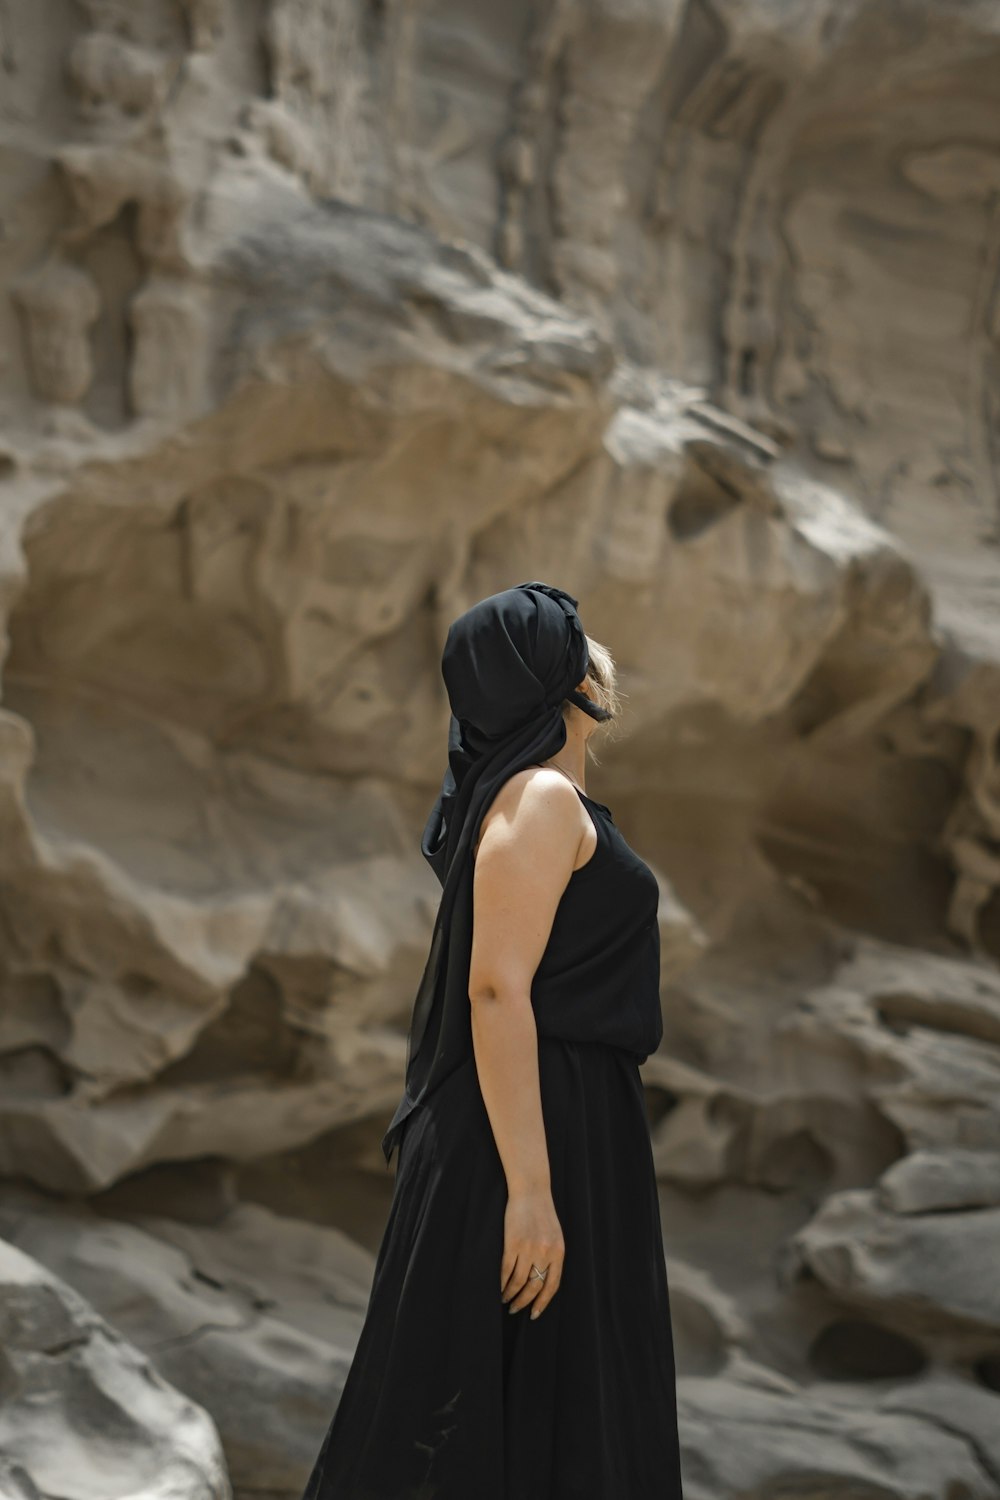 검은 드레스를 입은 여자가 암석 앞에 서 있다